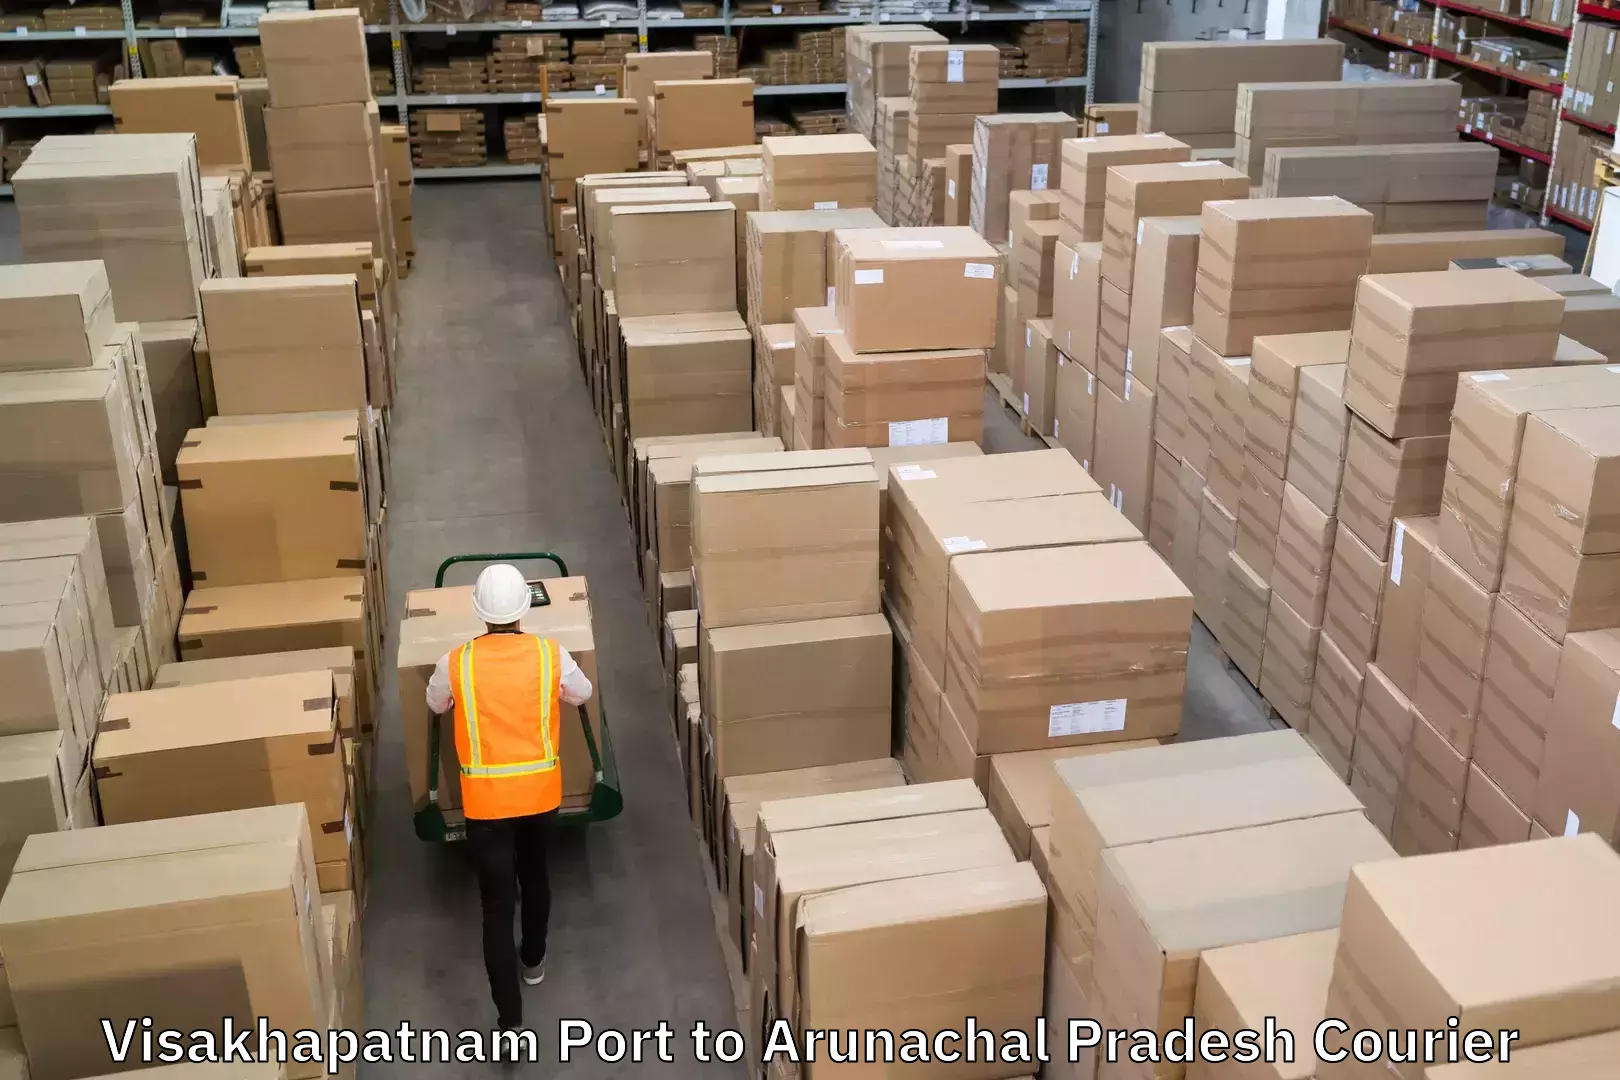 Efficient cargo handling in Visakhapatnam Port to Arunachal Pradesh